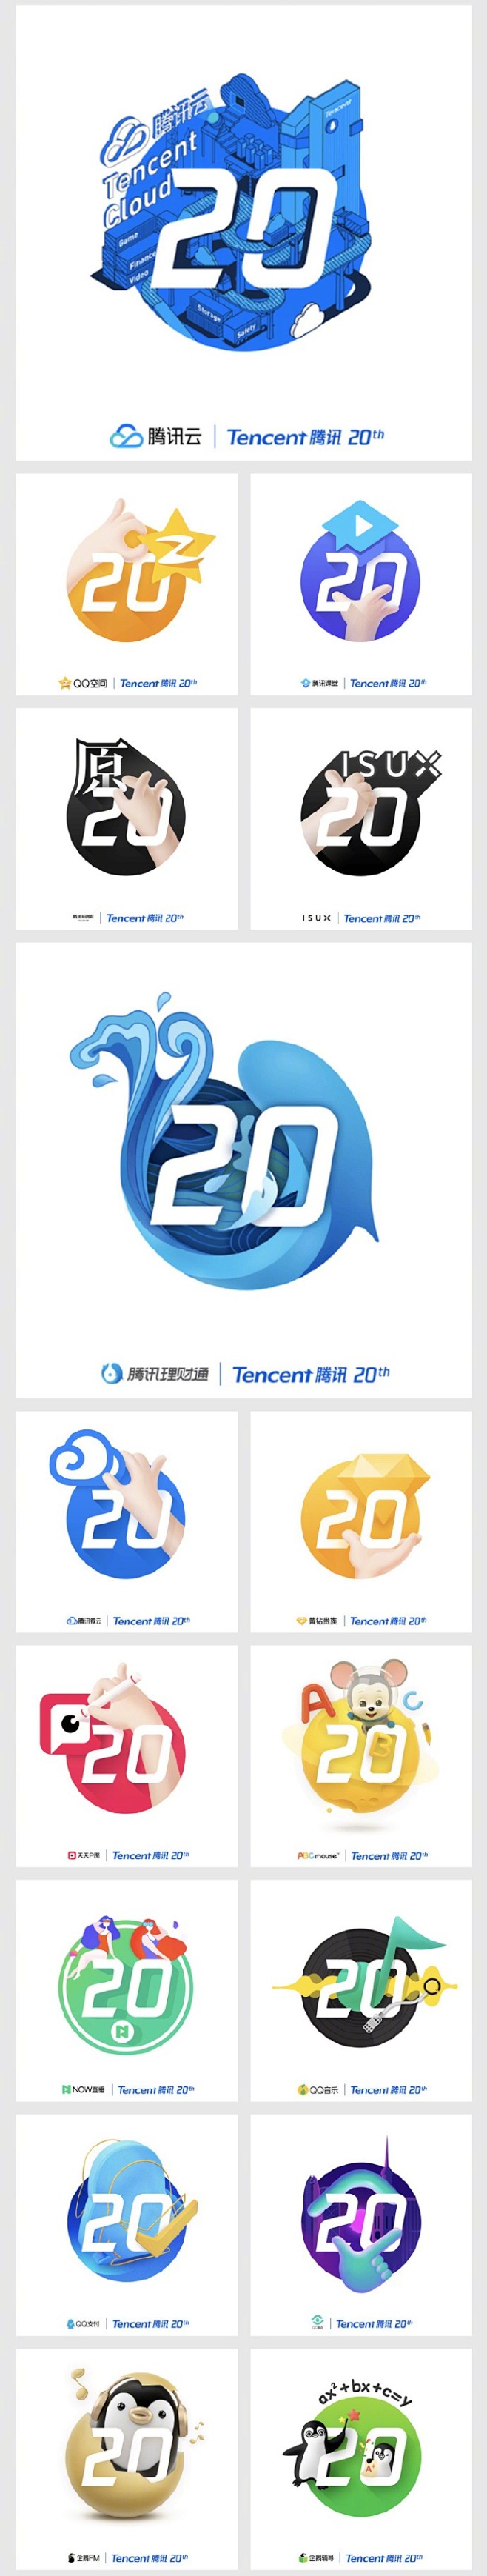 #设计秀#【腾讯 20 周年品牌标志延展...